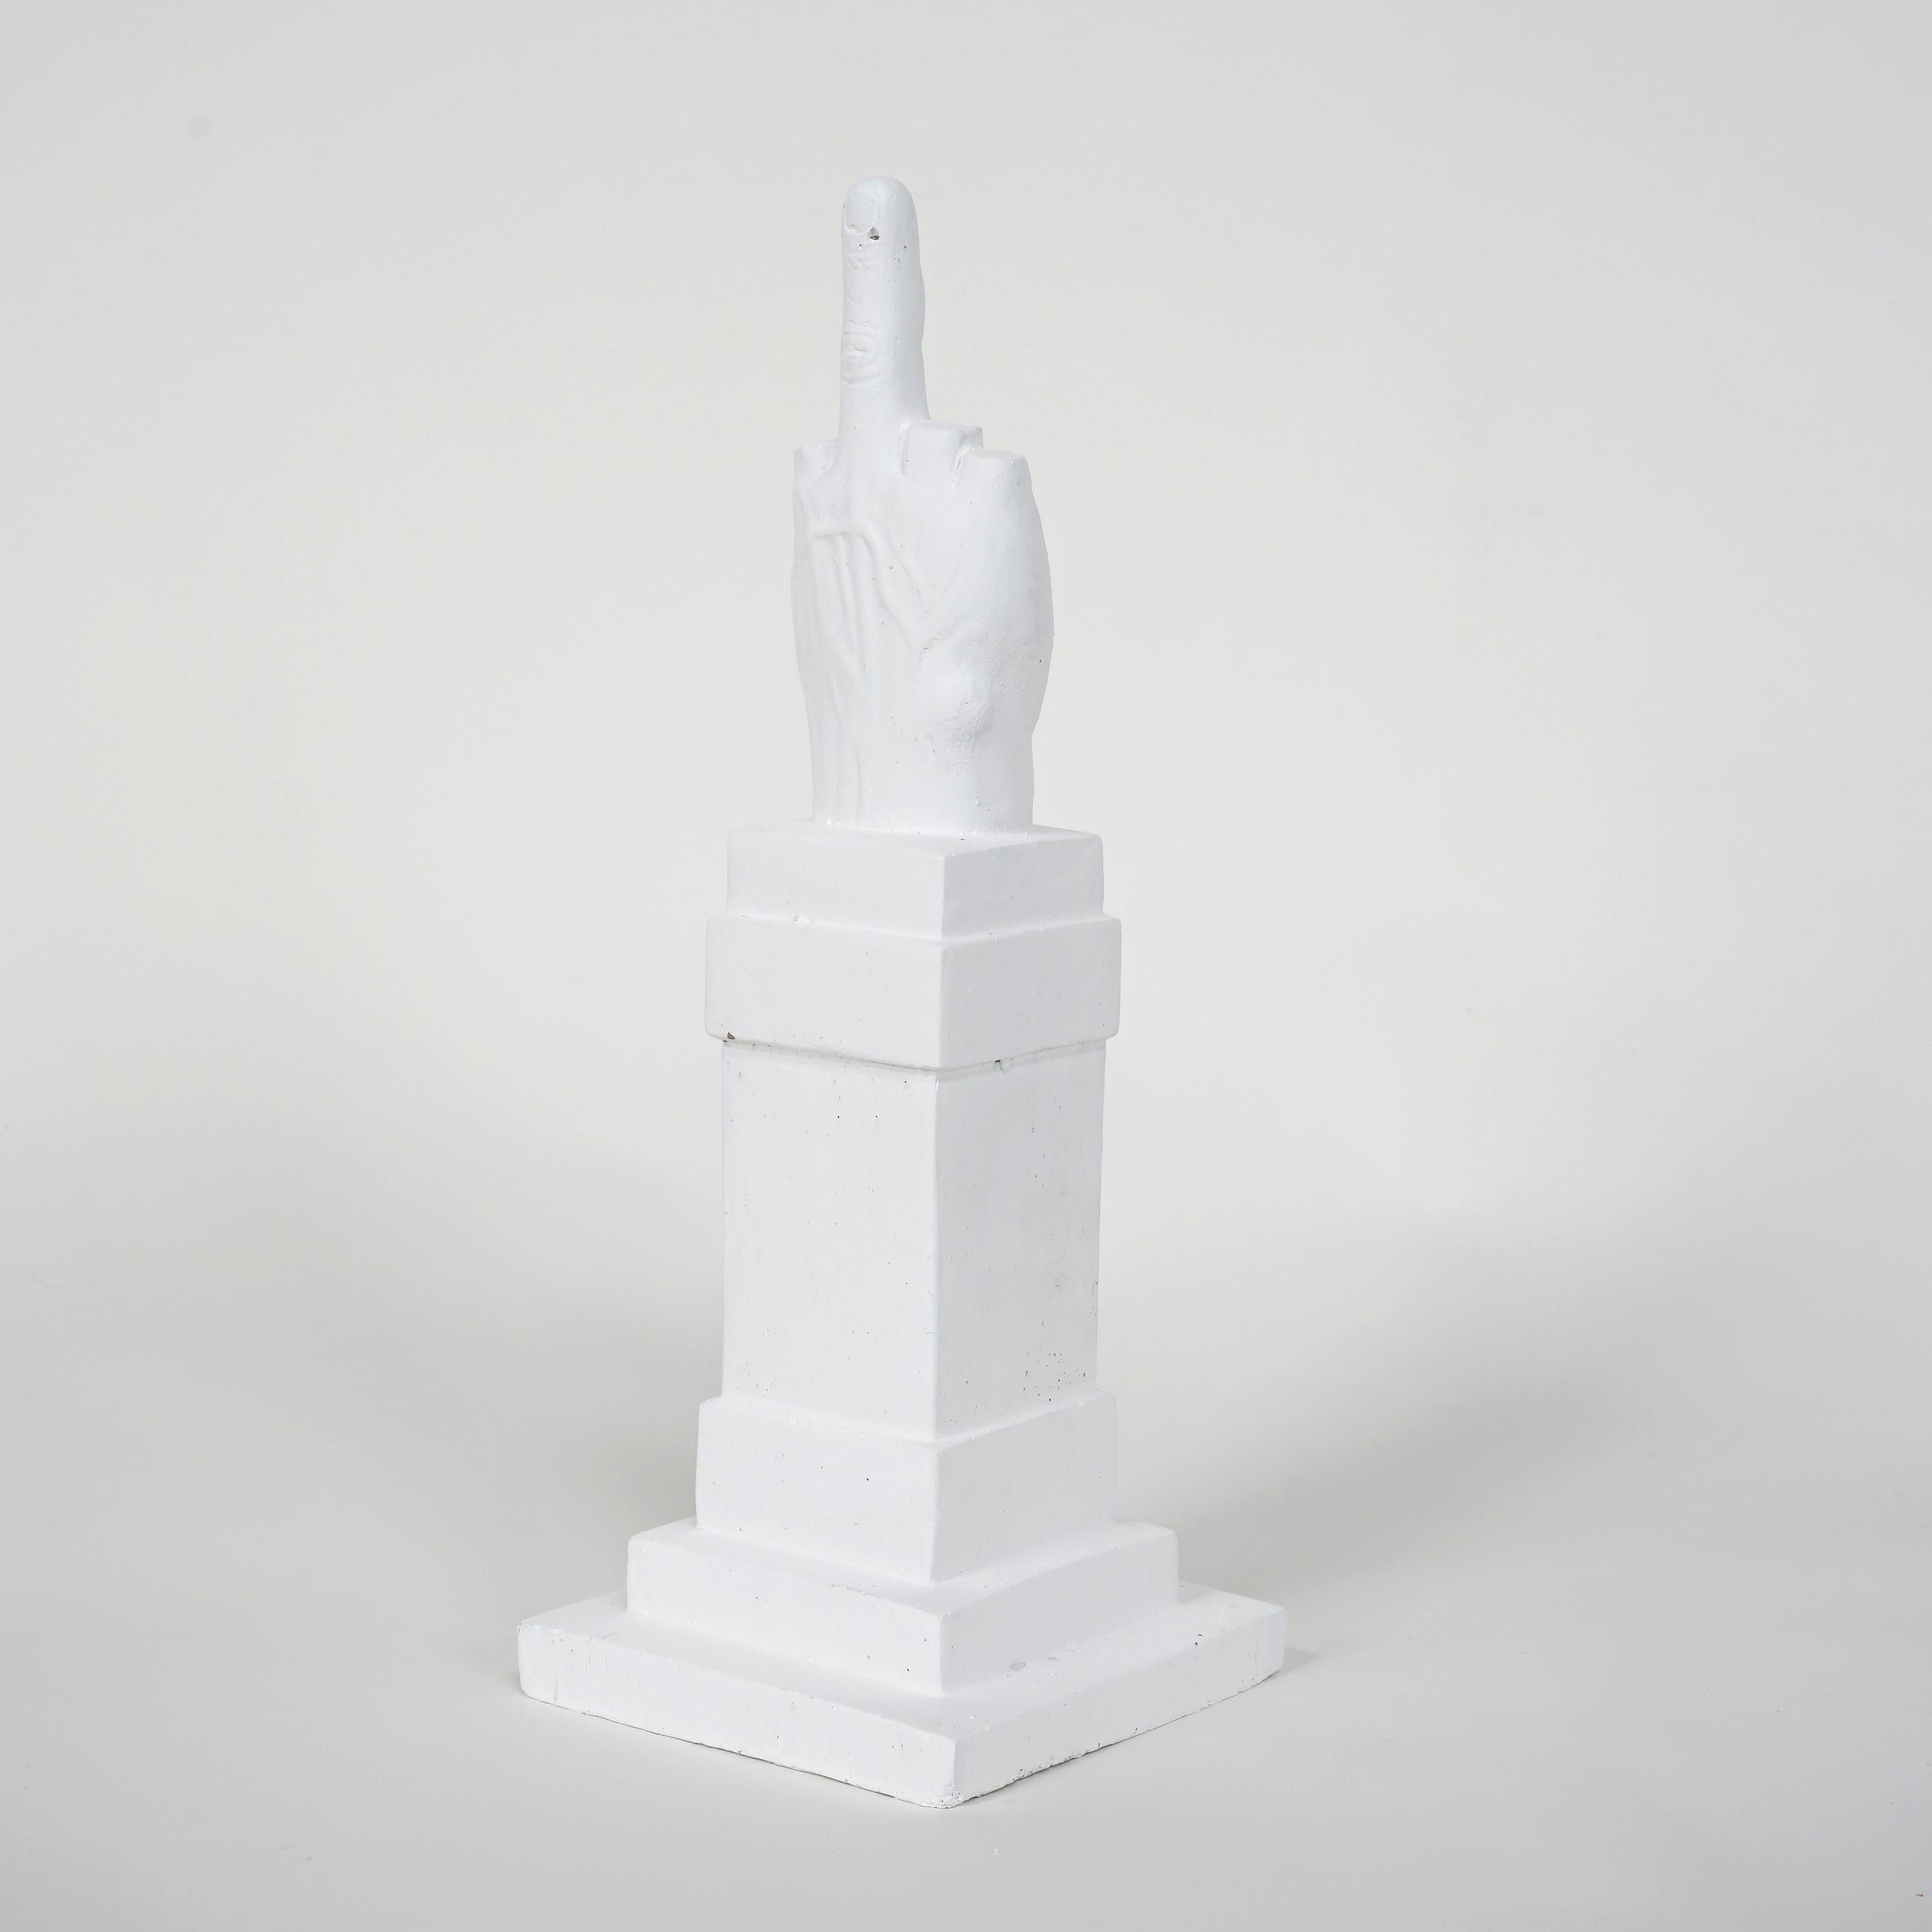 Kunstwerk Medien
Maurizio Cattelan
L.O.V. E. White
2014
Betonskulptur
40 × 18 × 18 cm
(15,7 × 7,1 × 7,1 Zoll)
Vom Nachlass des Künstlers gestempelt
Auflage von 200 Stück
In neuwertigem Zustand 
In der Originalverpackung und mit einem